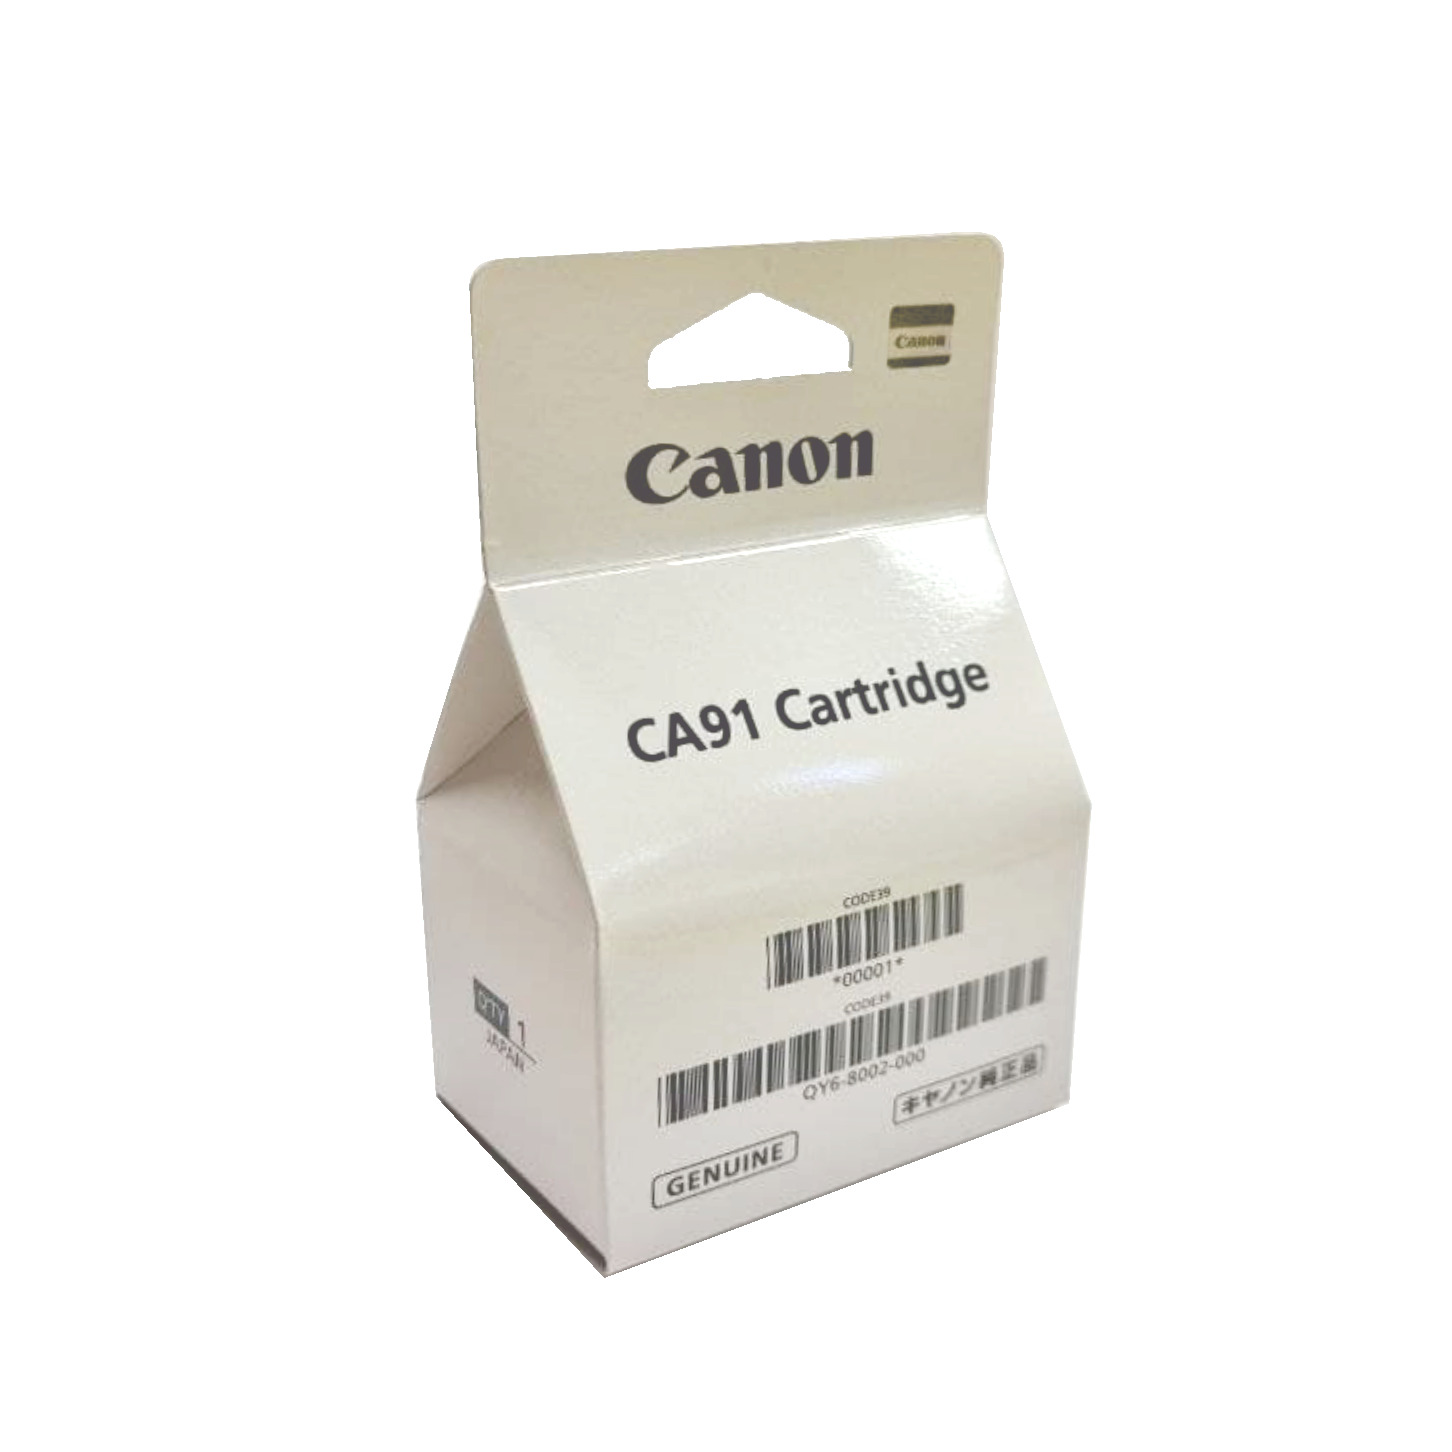 Картридж Canon CA91 (QY6-8002 Печатающая головка (чёрная) Canon Pixma-G1400/G3400/G2400)